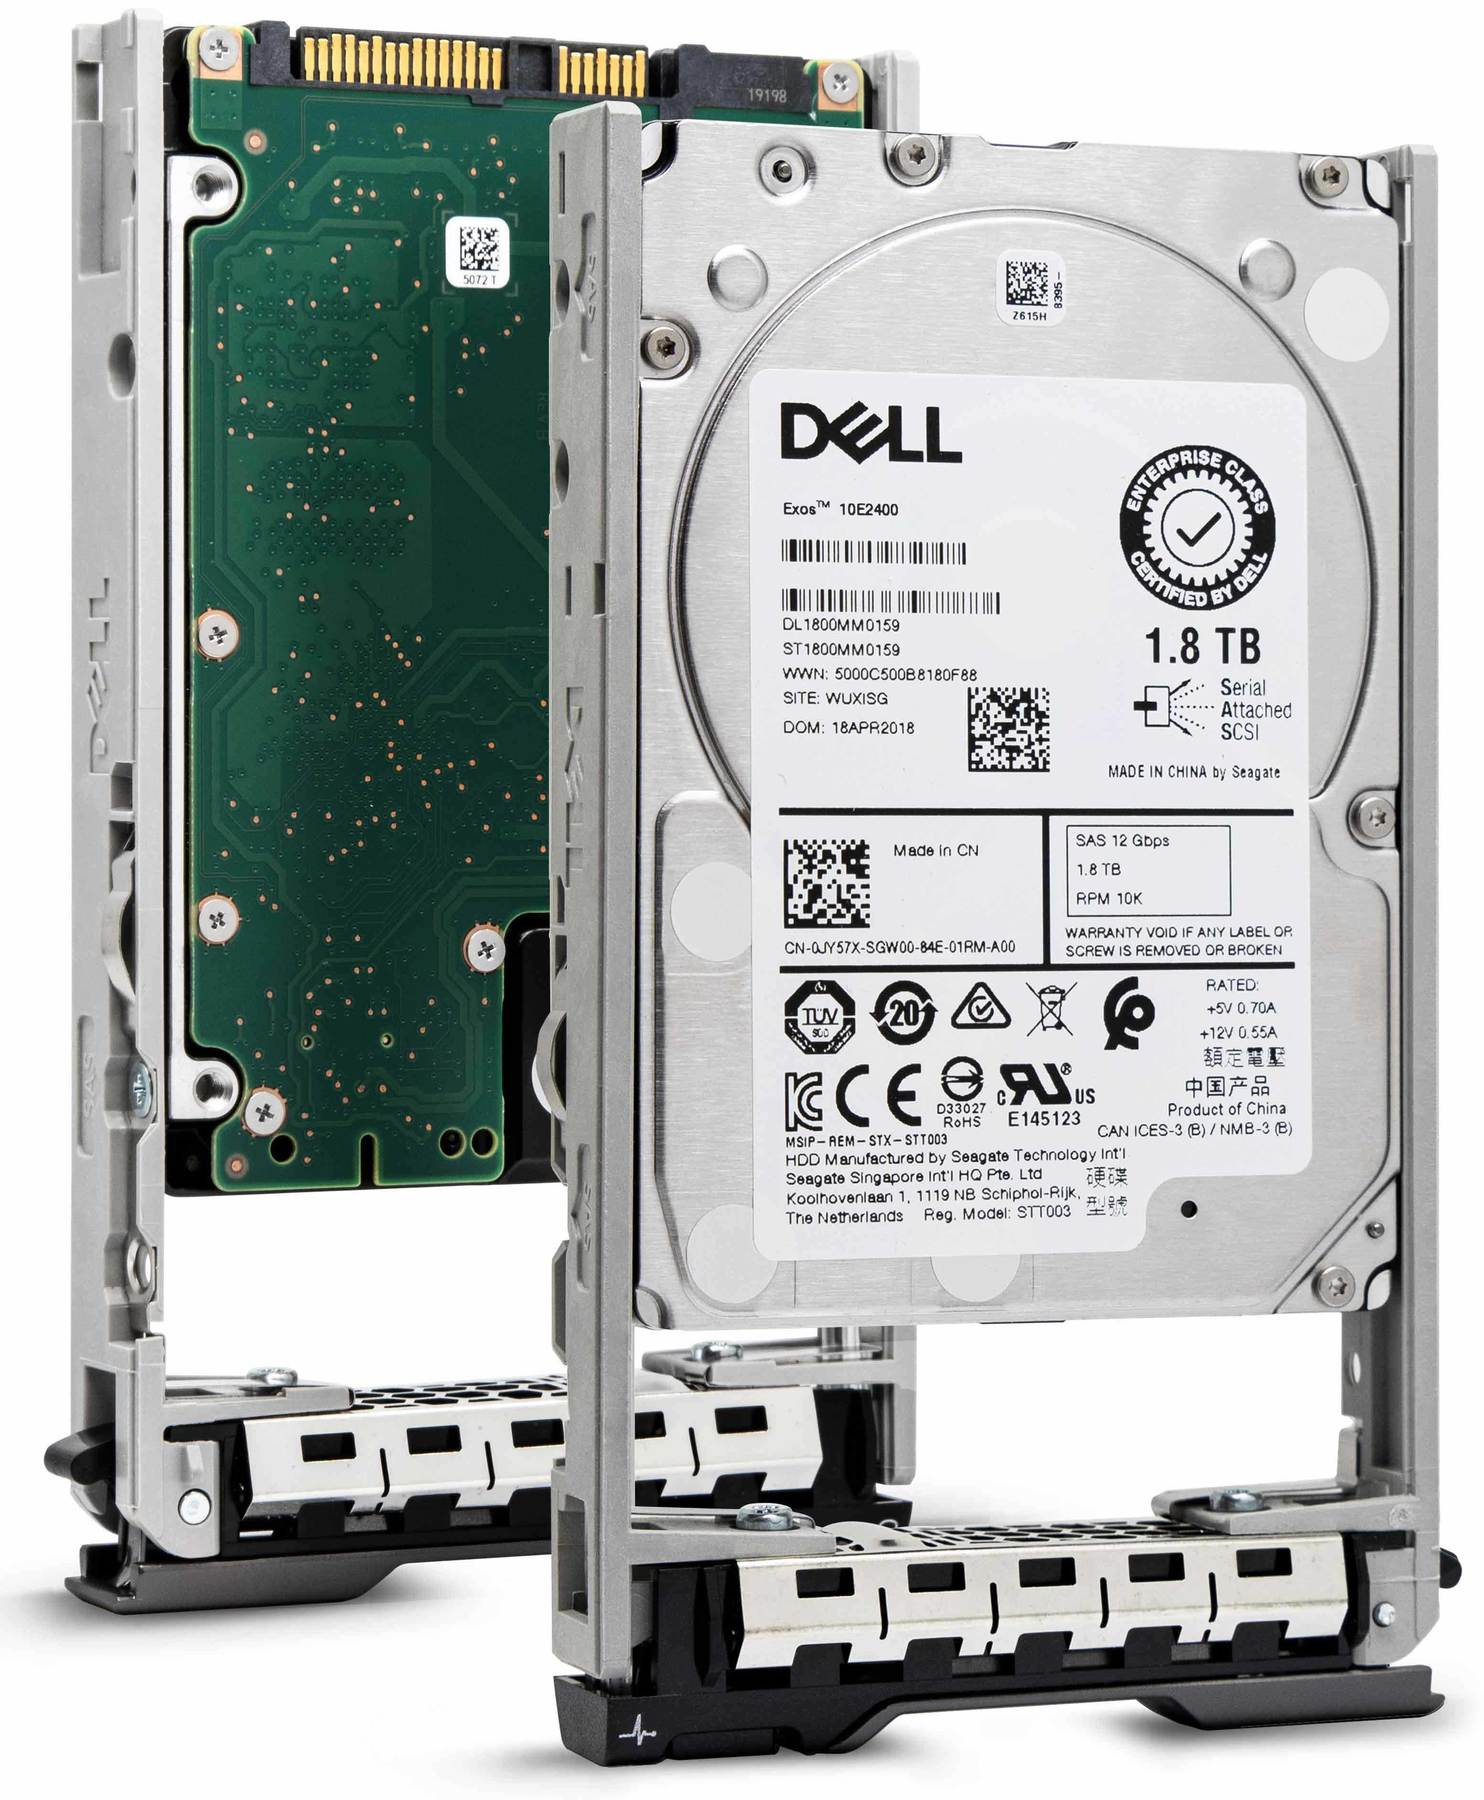 Dell G13 VJ7CD 1.8TB 10K RPM SAS 12Gb/s 512e 2.5" Hard Drive